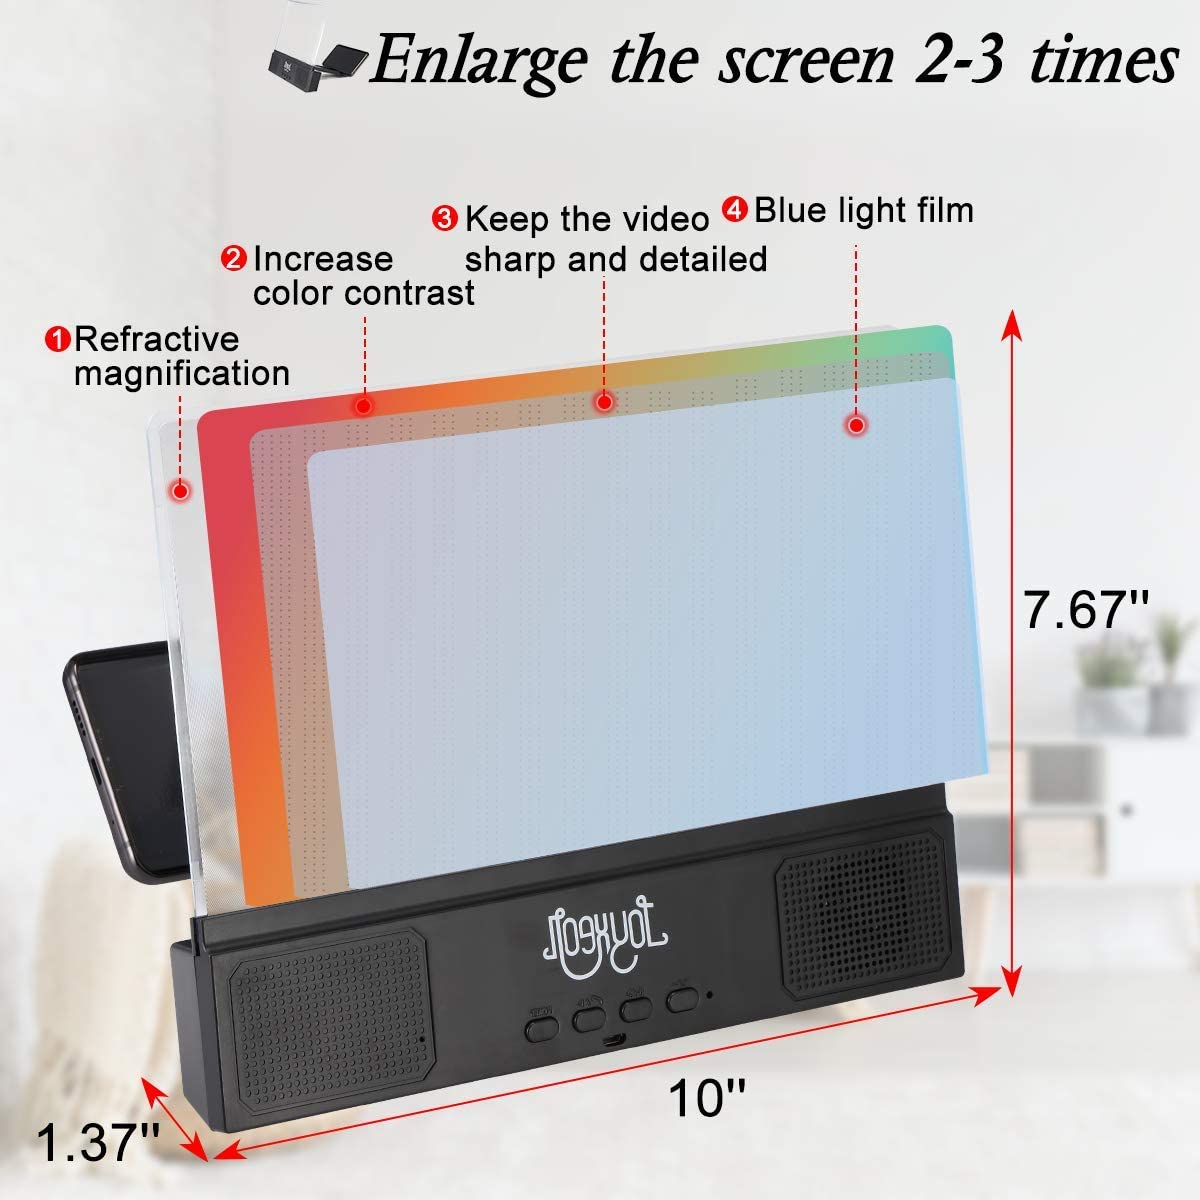 JOYXEON-12-inch-3D-Phone-Screen-Magnifier-Blue-Light-Movie-Video-Screen-Amplifier-with-Bass-bluetoot-1894917-11